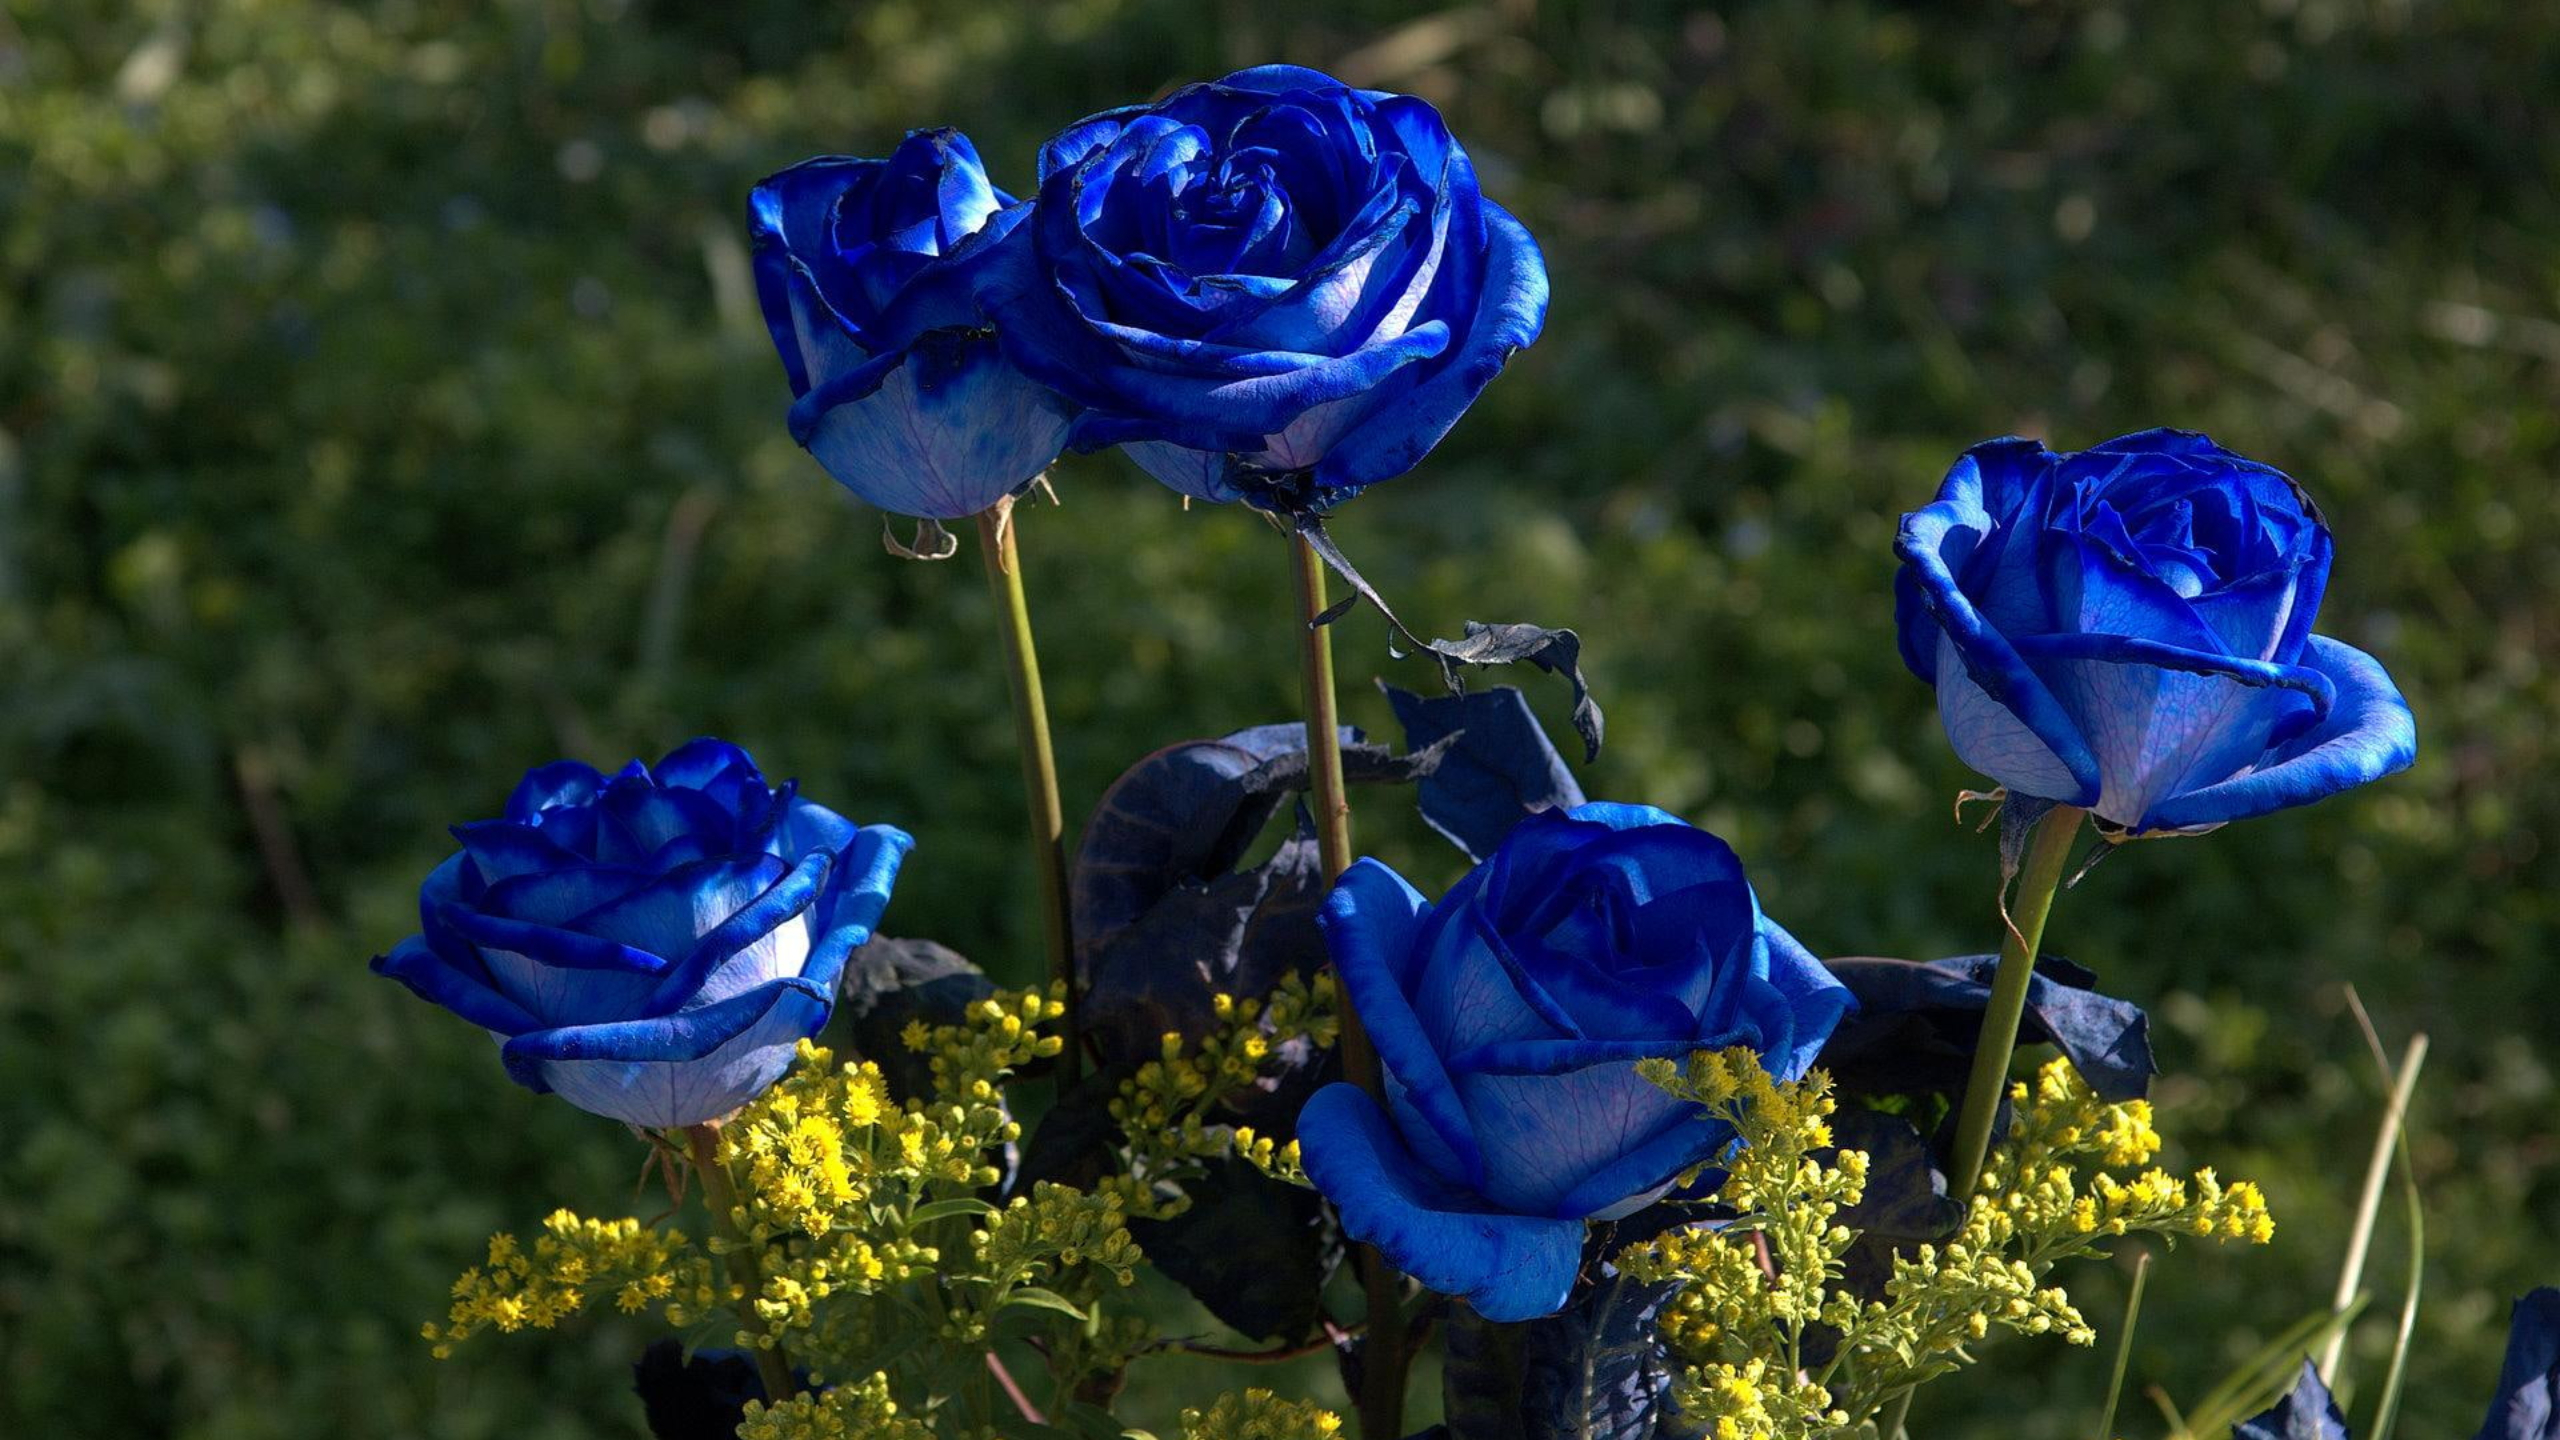 Hoa hồng xanh: Hãy khám phá những bông hoa hồng xanh tuyệt đẹp trong hình ảnh này. Không chỉ đẹp mắt mà còn mang theo một ý nghĩa đặc biệt về tình yêu và sự hiền hòa. Đón xem để trải nghiệm một trải nghiệm đầy thú vị và ý nghĩa.